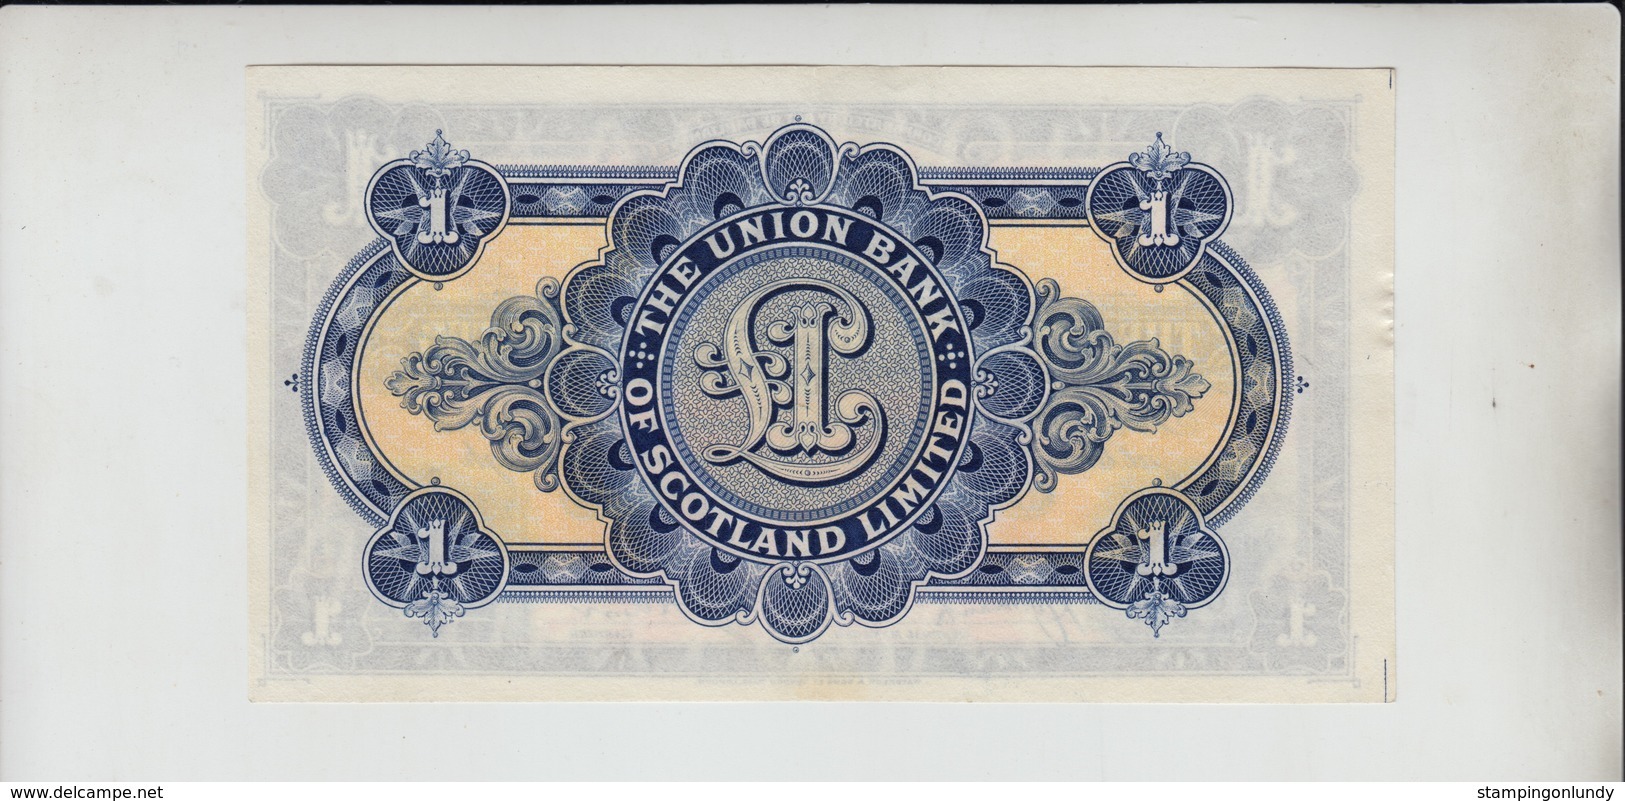 AB195. The Union Bank Of Scotland Ltd £1 Note 31st May 1938 #M/31 769650 FREE UK P+P - 1 Pound